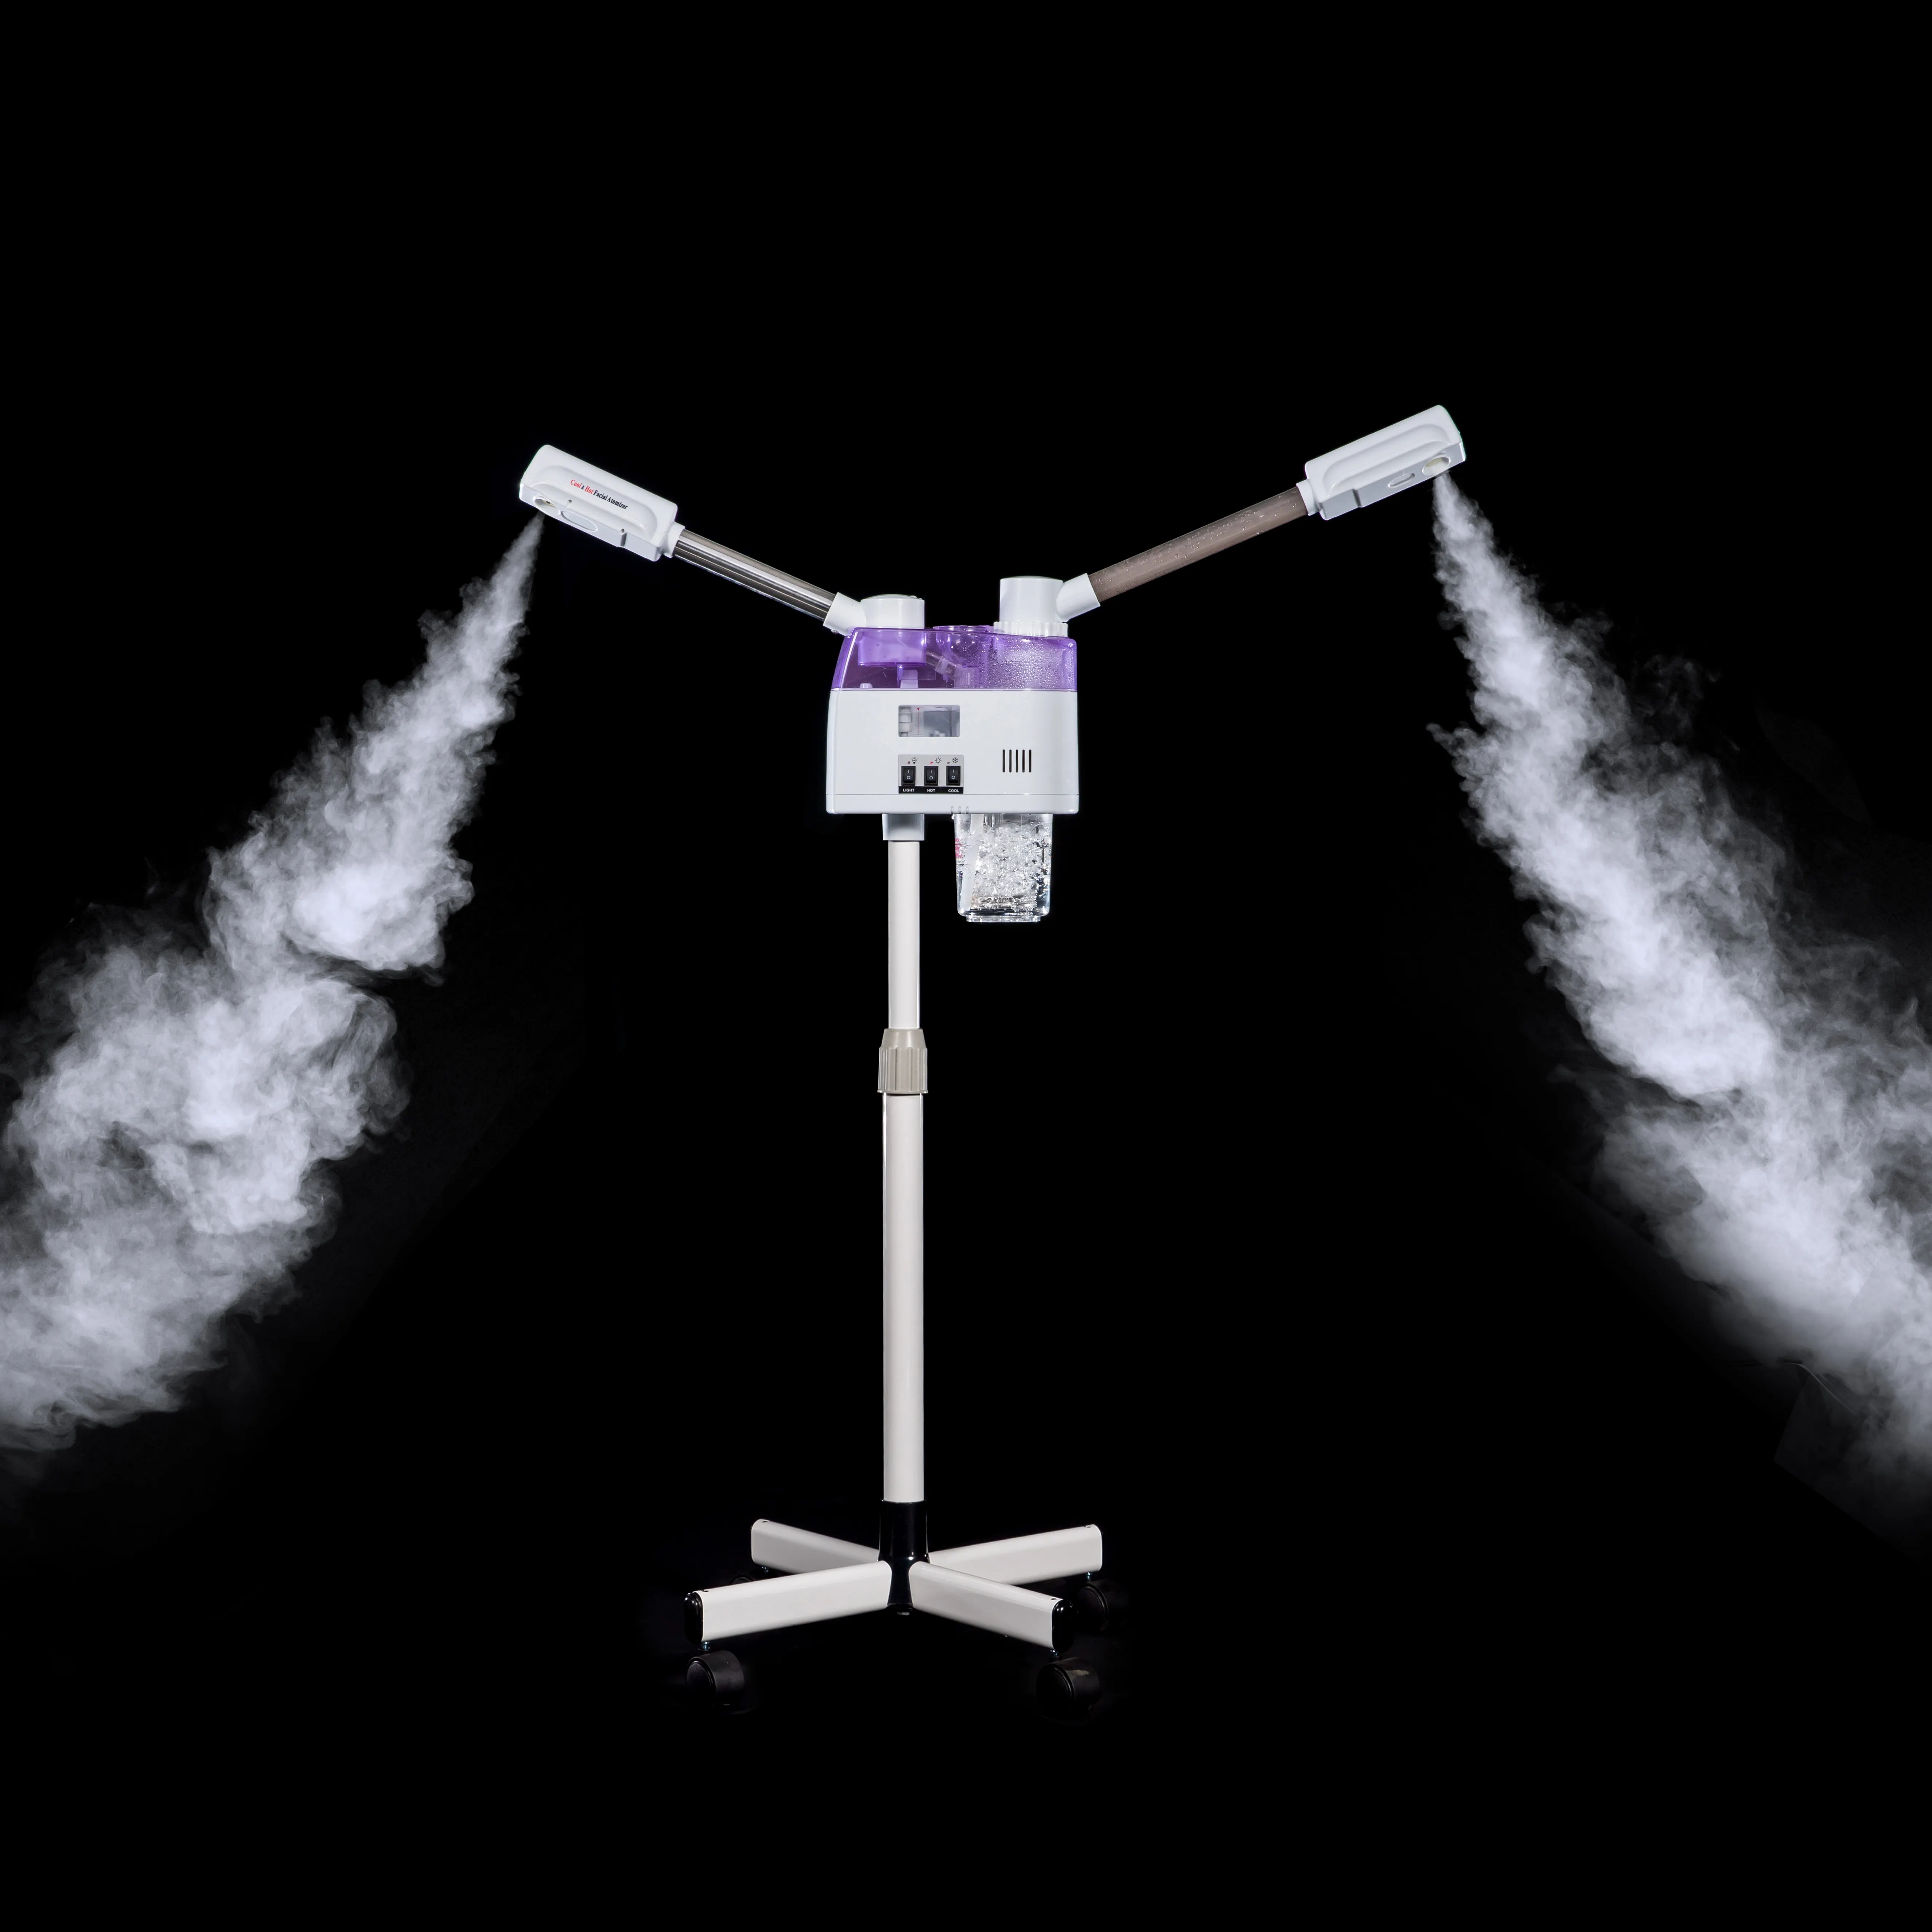 Hot sell vaporizador facial profesional vapor de ozono facial profesional vapor ozono facial facial steamer